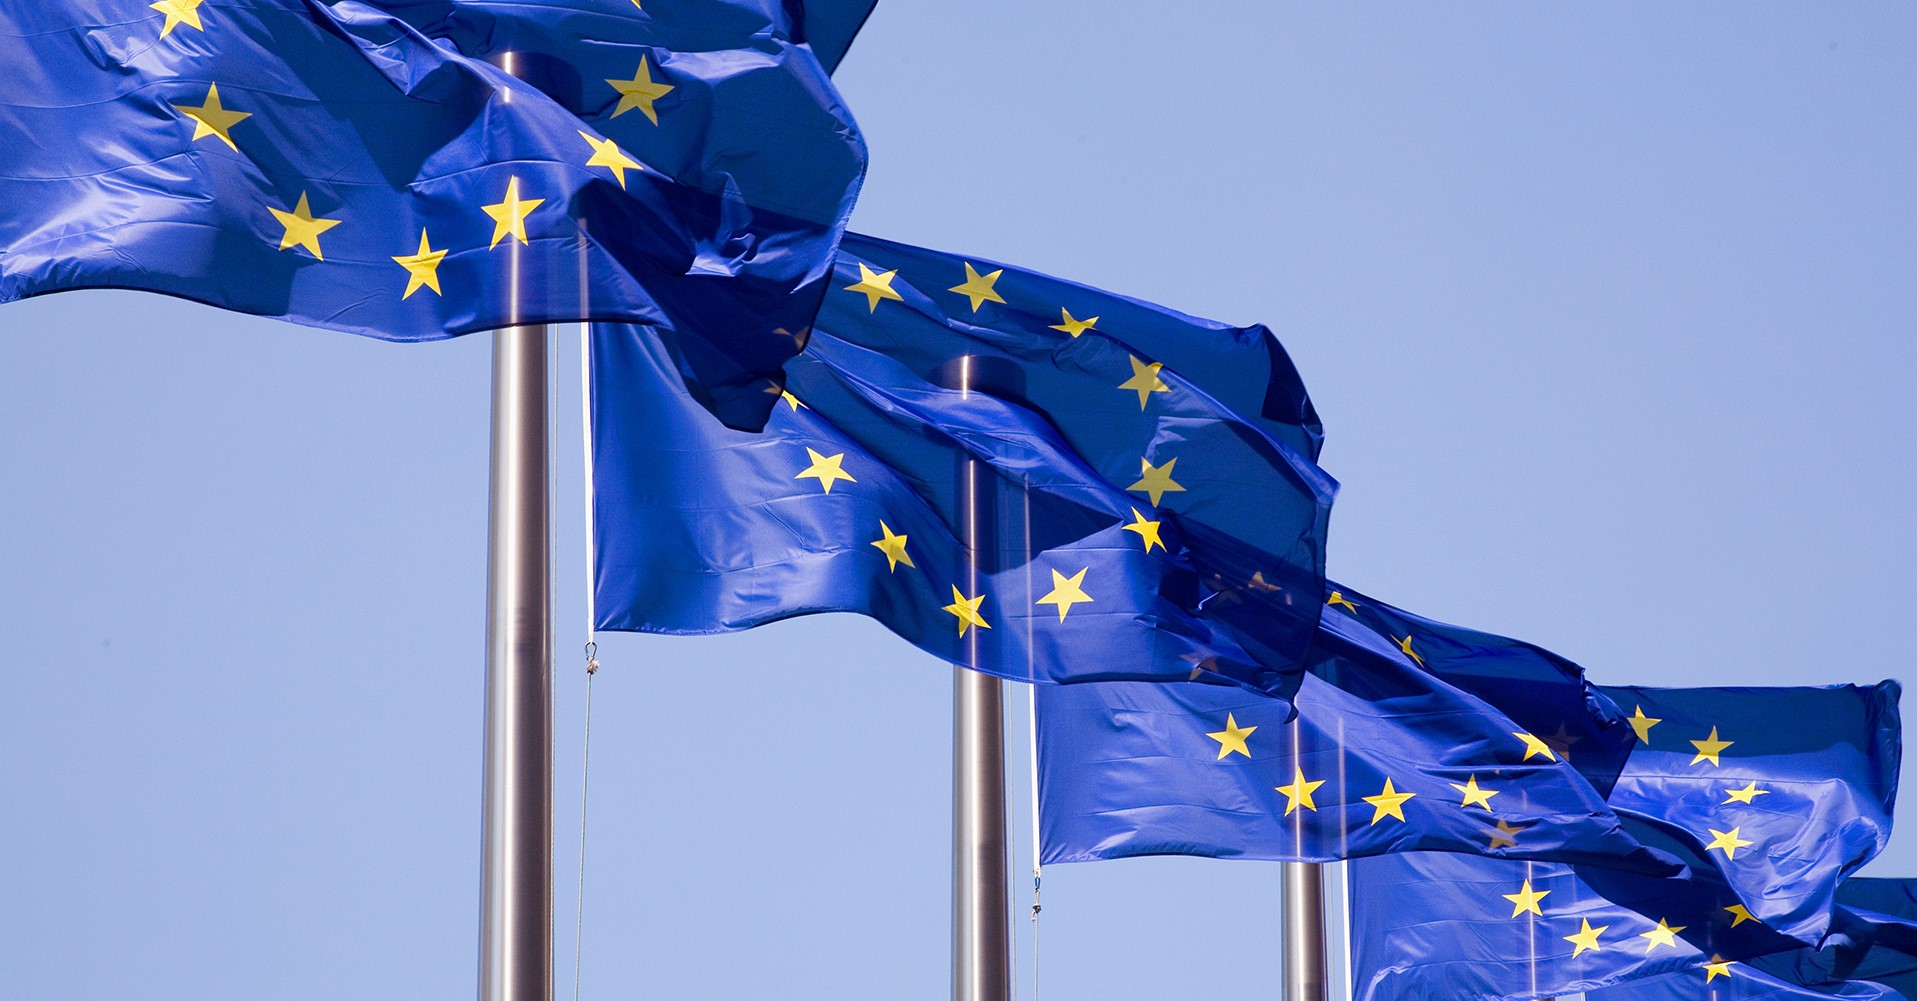 Flera flaggstänger med blå EU-flaggor med gula stjärnor på rad mot blå himmel.